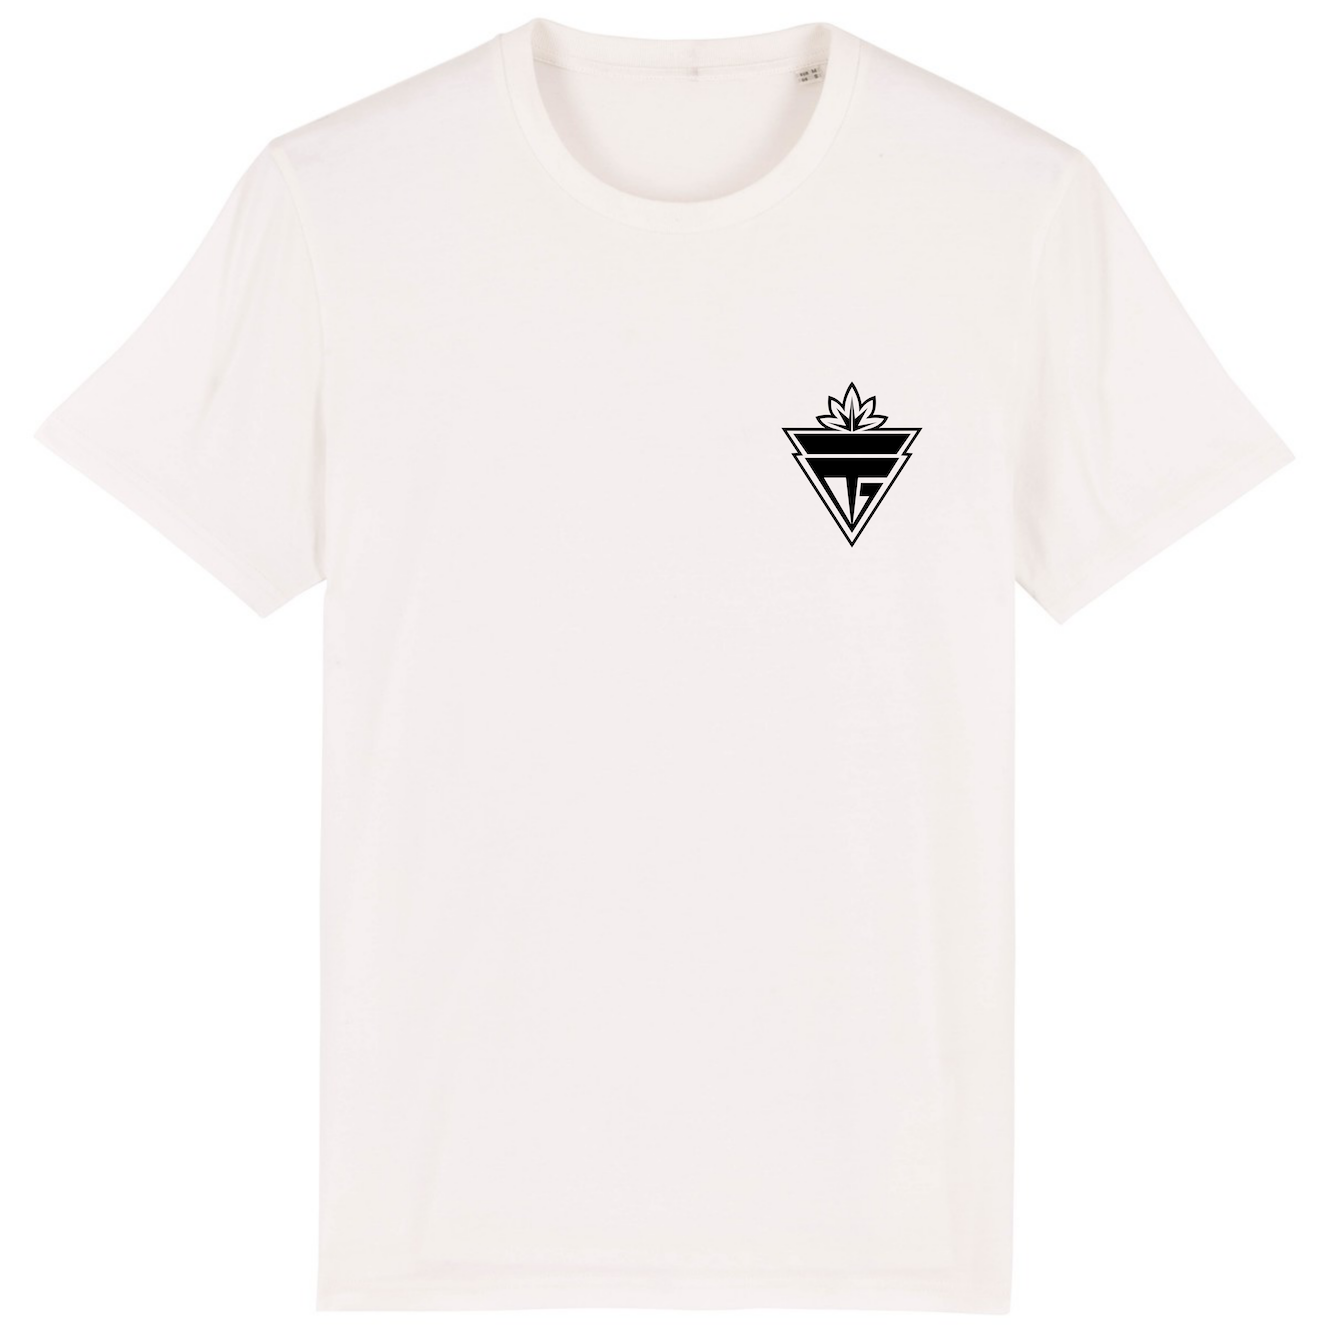 T-shirt Eiland Geit